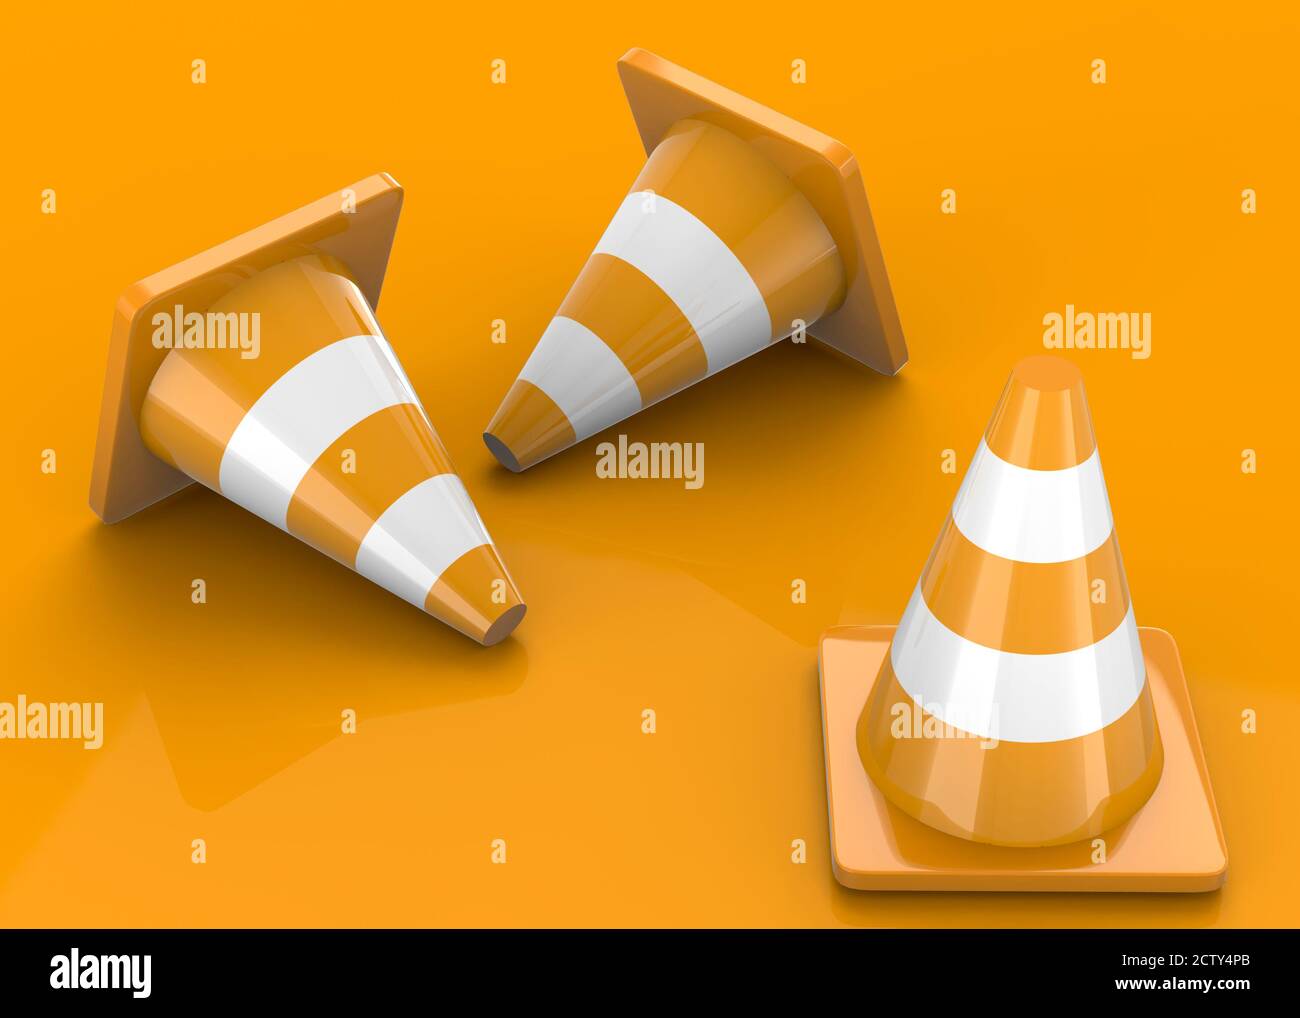 Traffic Cones - 3D Stock Photo